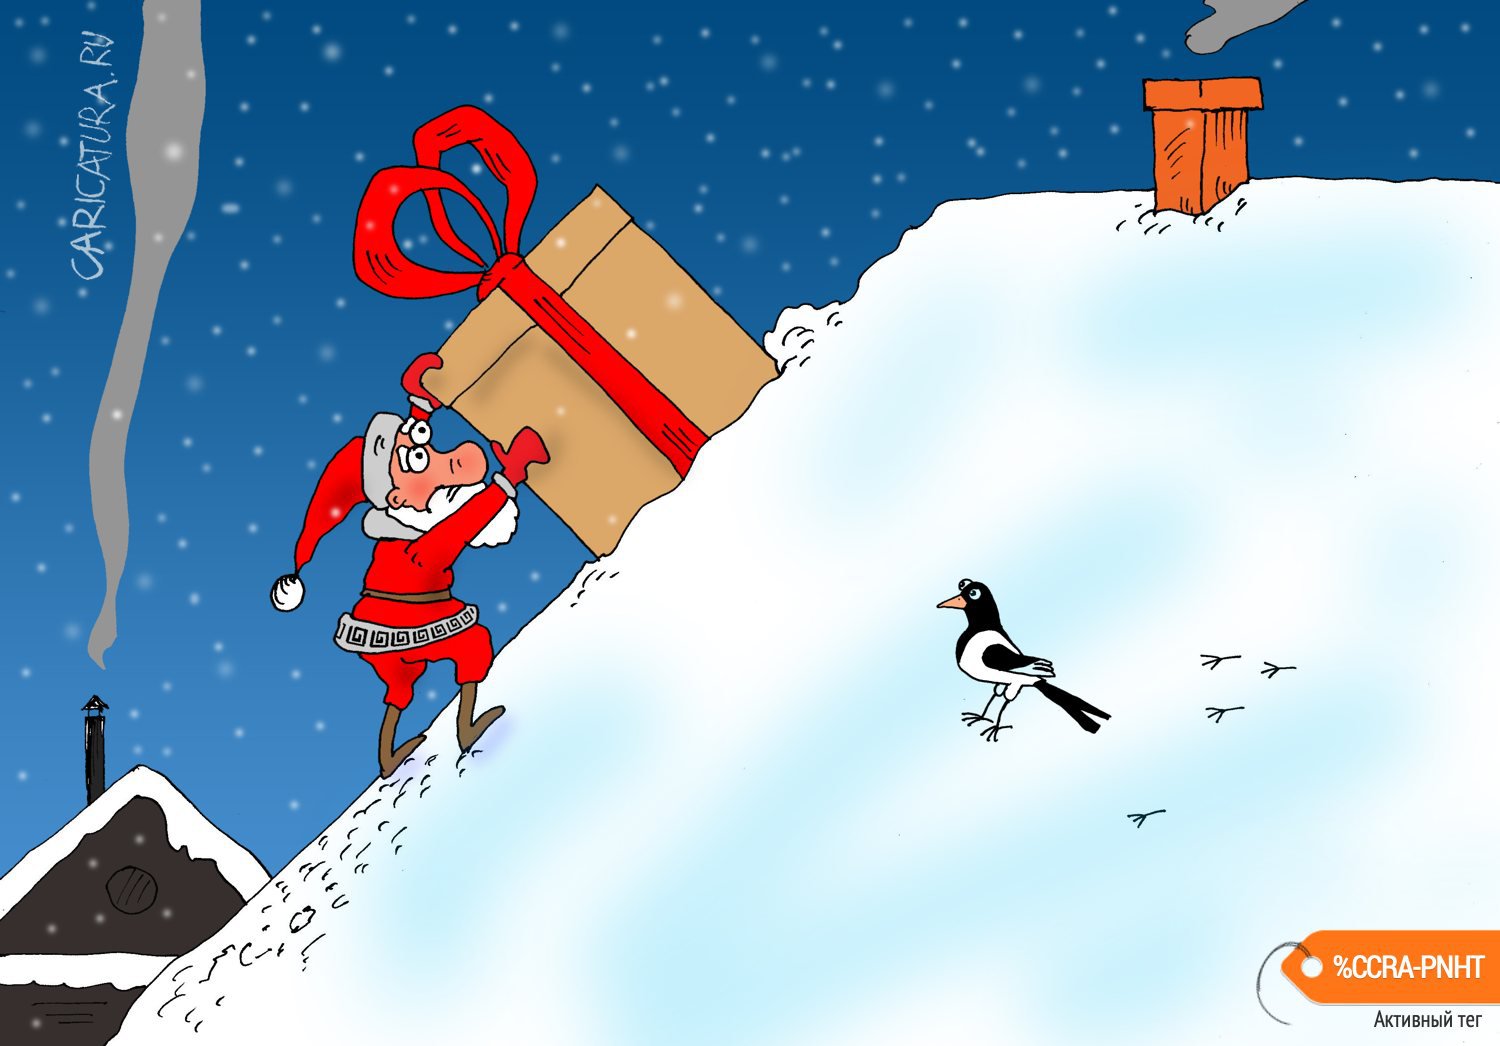 Карикатура "Подарок", Валерий Тарасенко